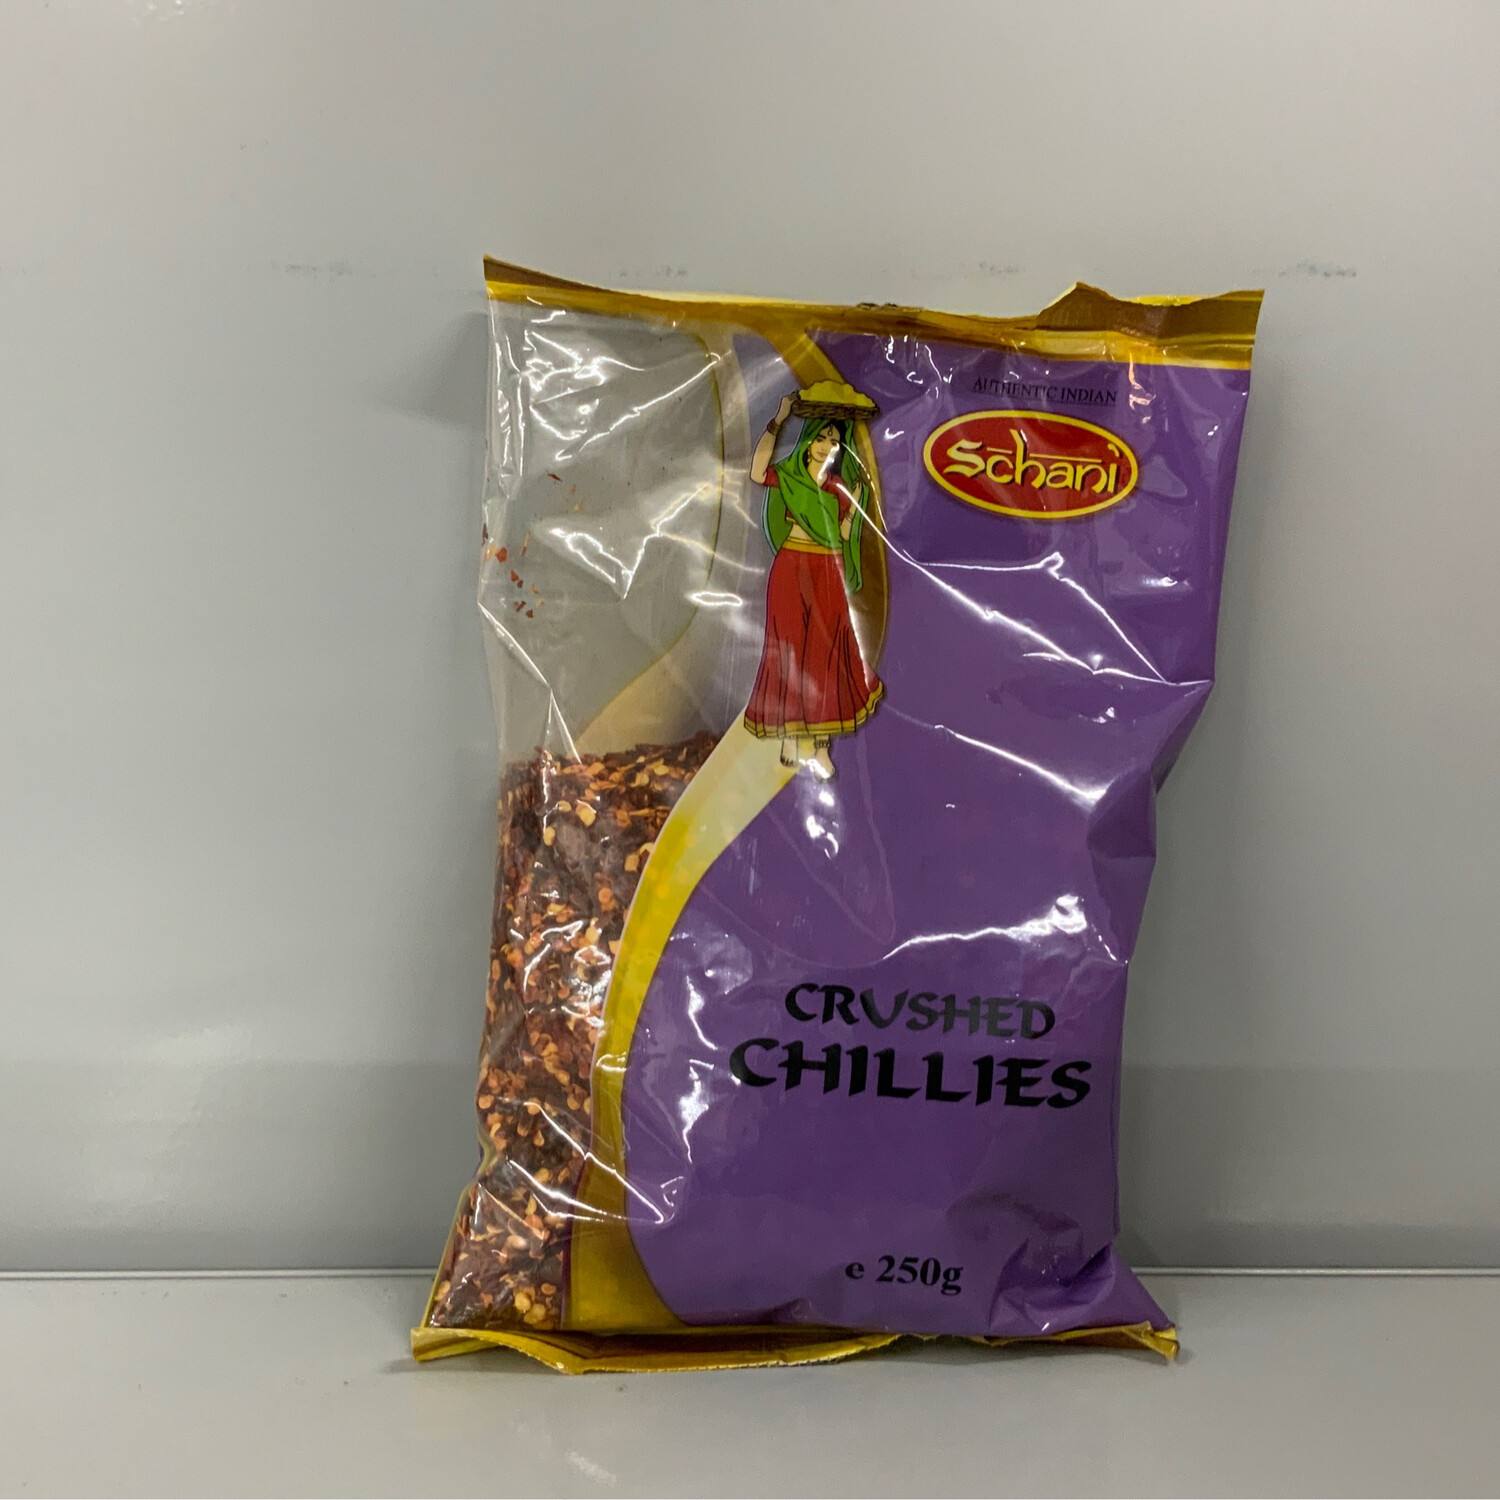 Schani Crushed Chilies 250g